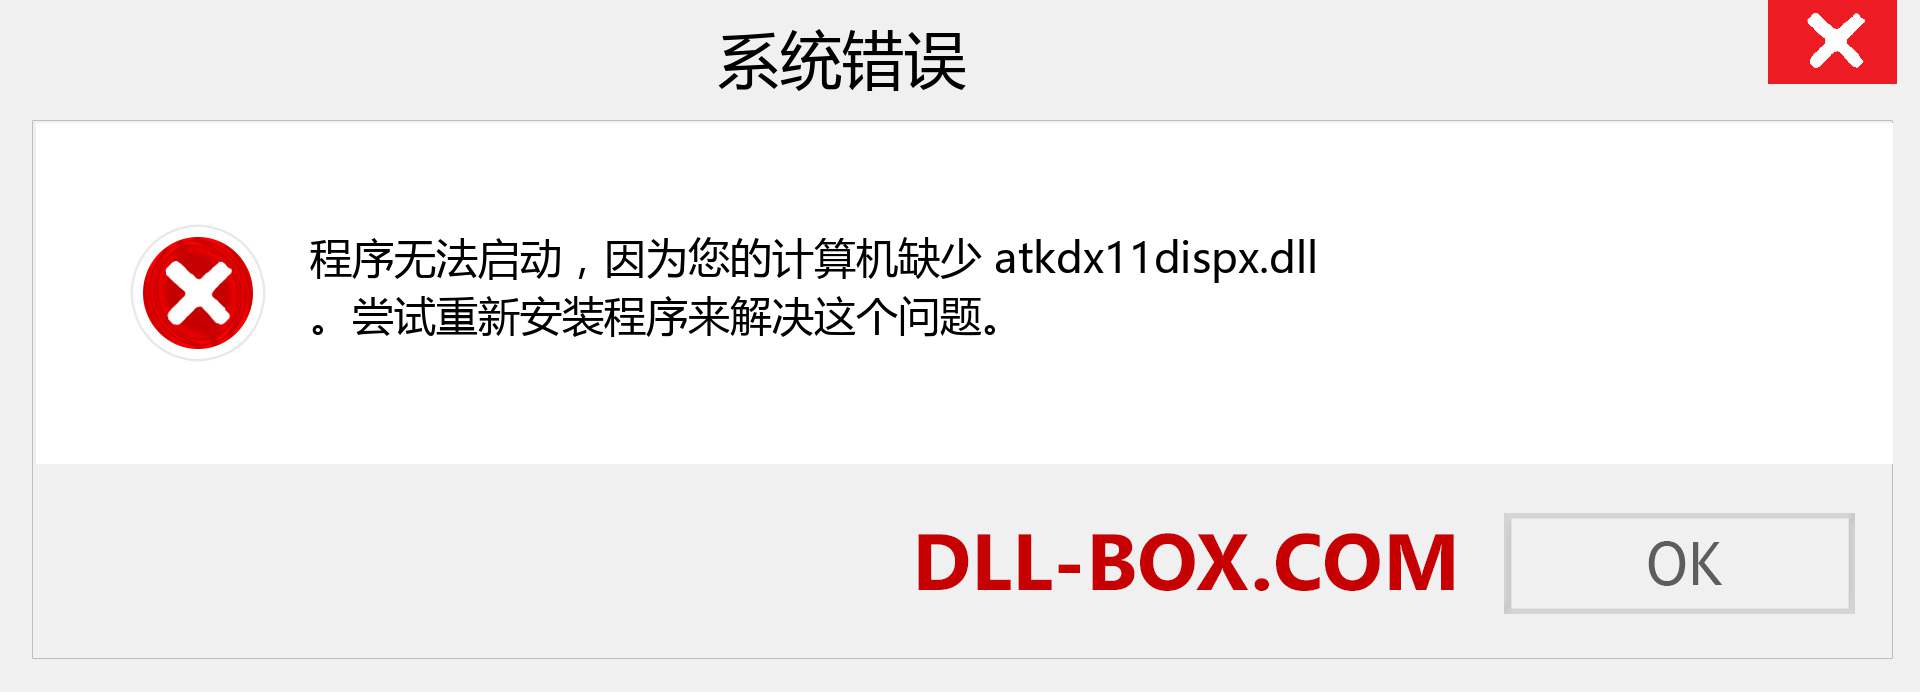 atkdx11dispx.dll 文件丢失？。 适用于 Windows 7、8、10 的下载 - 修复 Windows、照片、图像上的 atkdx11dispx dll 丢失错误